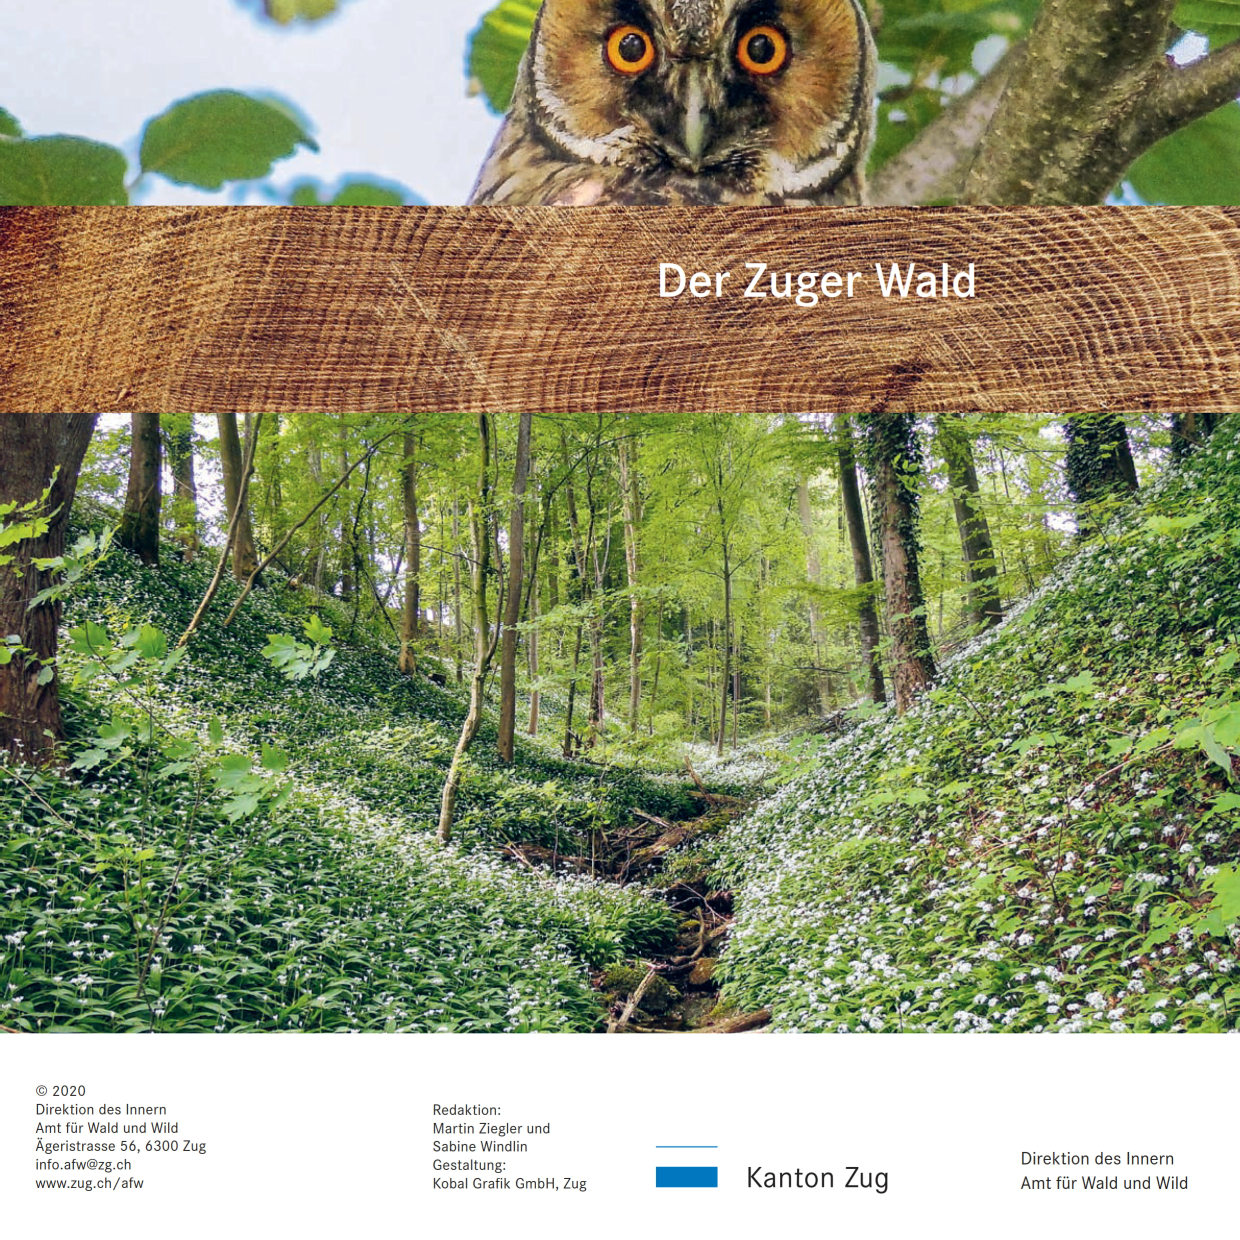 Titelbild Broschüre "Der Zuger Wald"